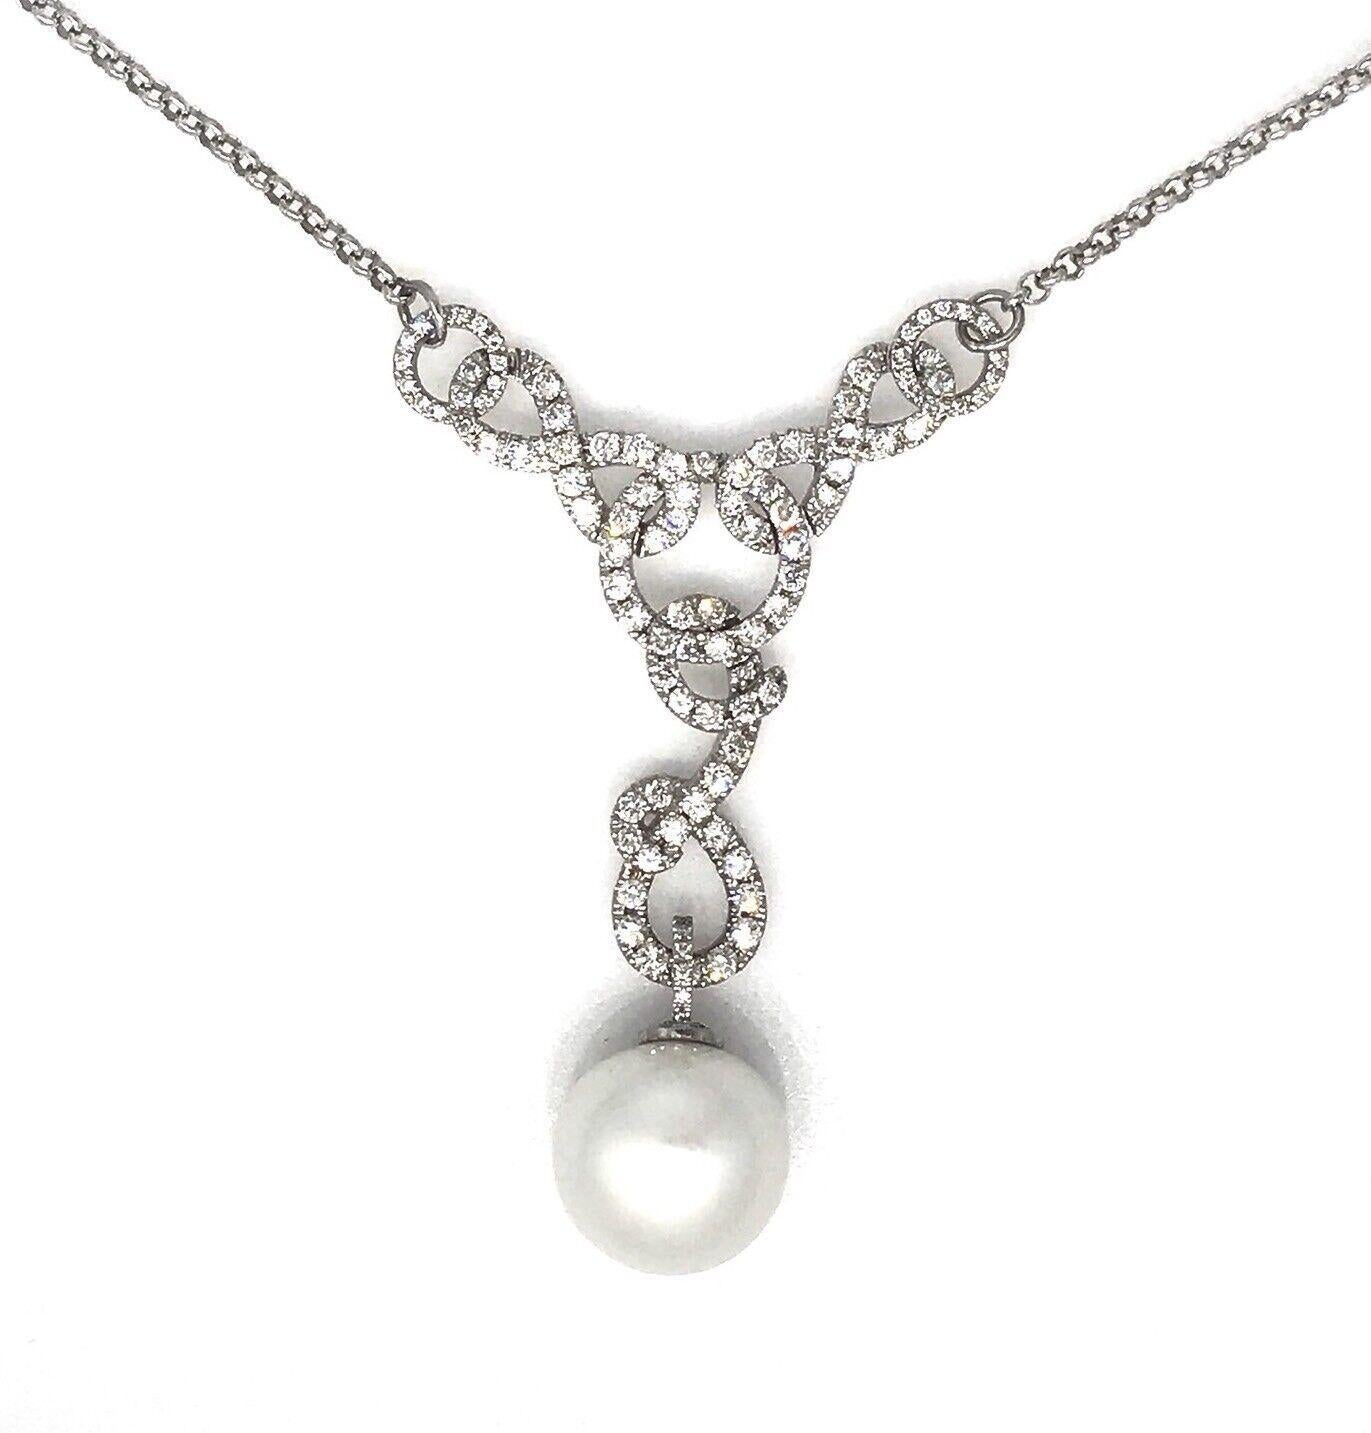 Collier pendentif diamant et perle des mers du Sud en or blanc 18k

Le collier de diamants et de perles présente une perle blanche des mers du Sud de 16 mm de diamètre qui pend au bas d'un pendentif en diamants tourbillonnants avec des diamants